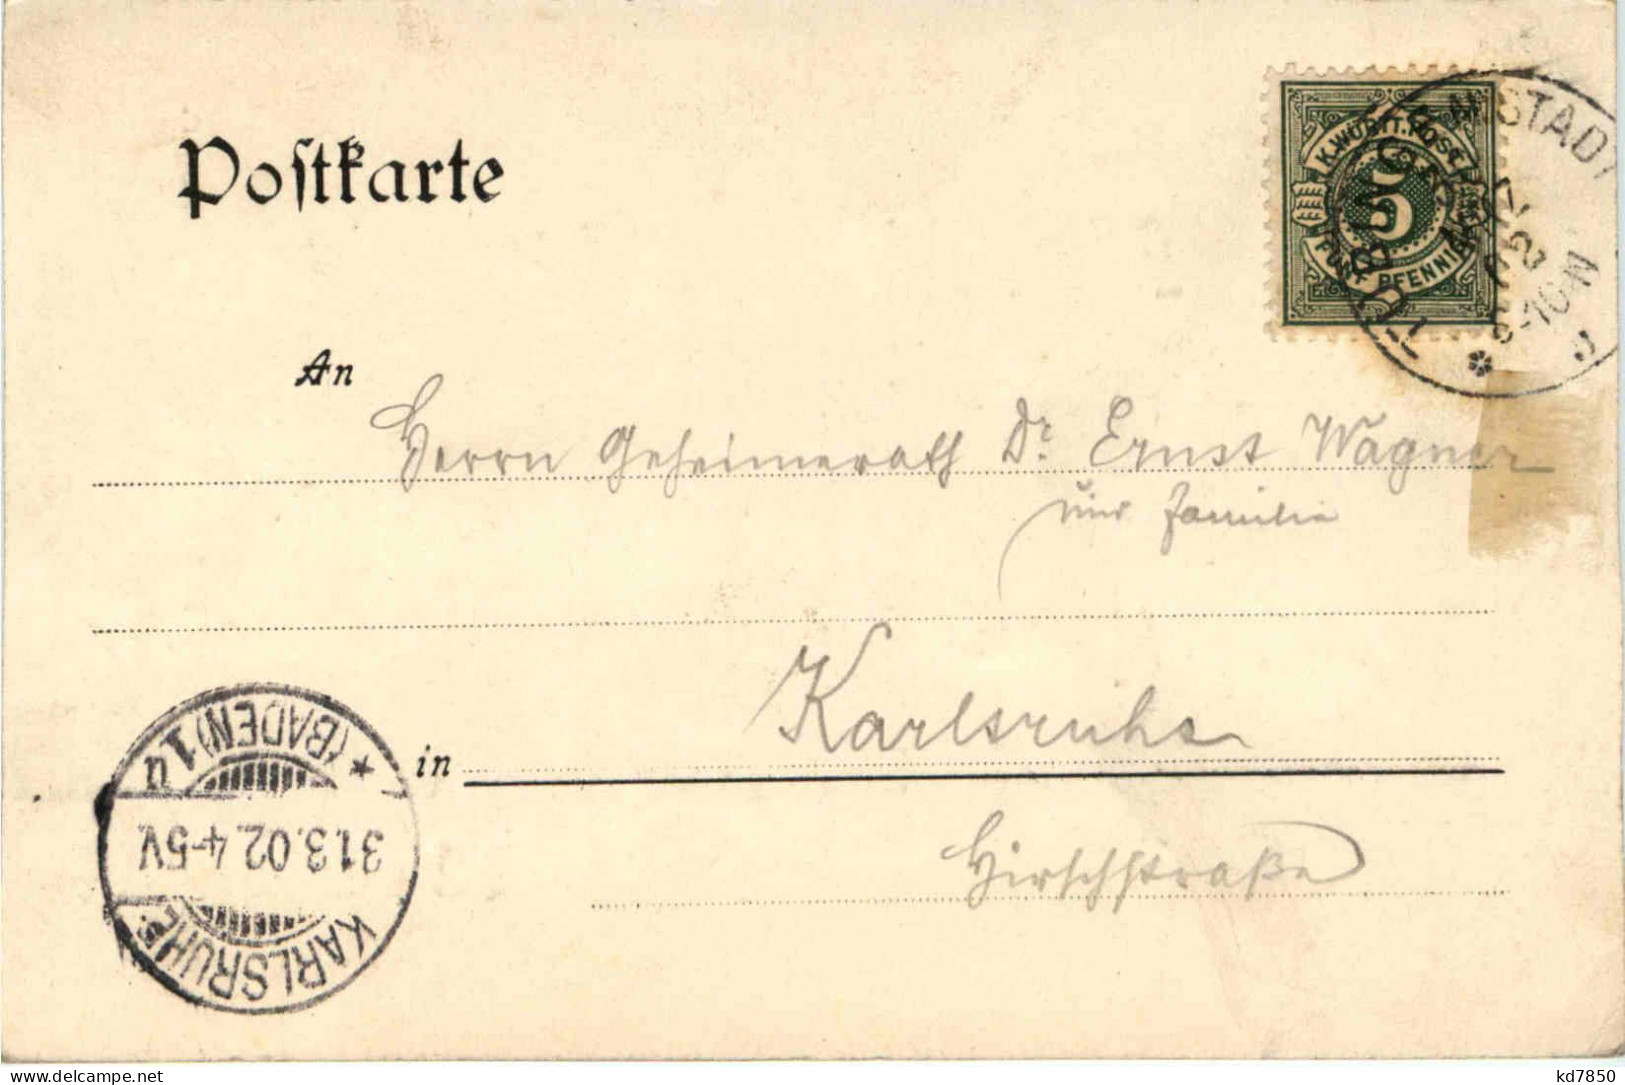 Abschied Der Württembergischen Briefmarke - Postzegels (afbeeldingen)